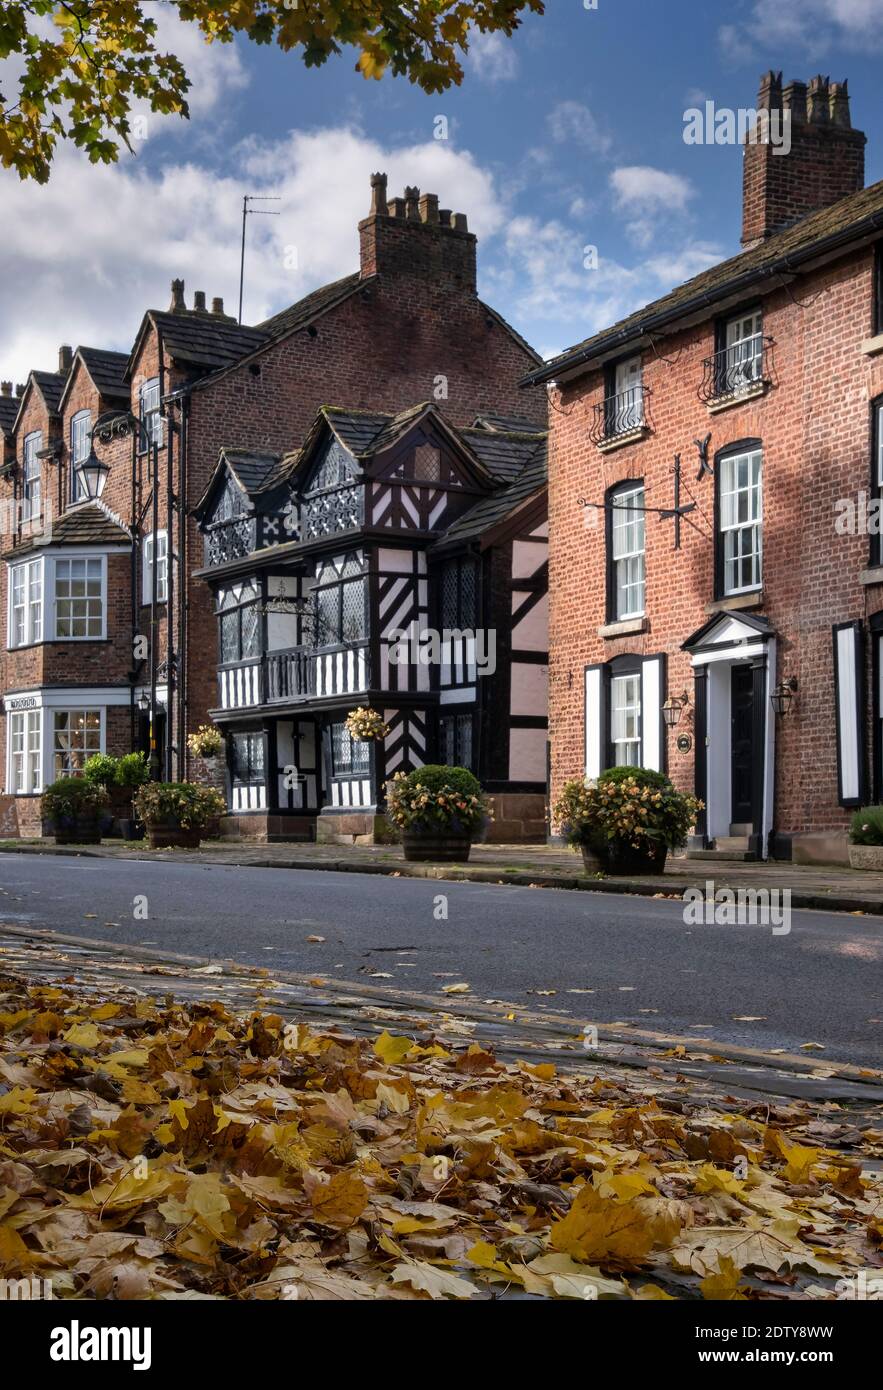 Le bois noir et blanc encadré de la Maison des prêtres en automne, Prestbury, Cheshire, Angleterre, Royaume-Uni Banque D'Images